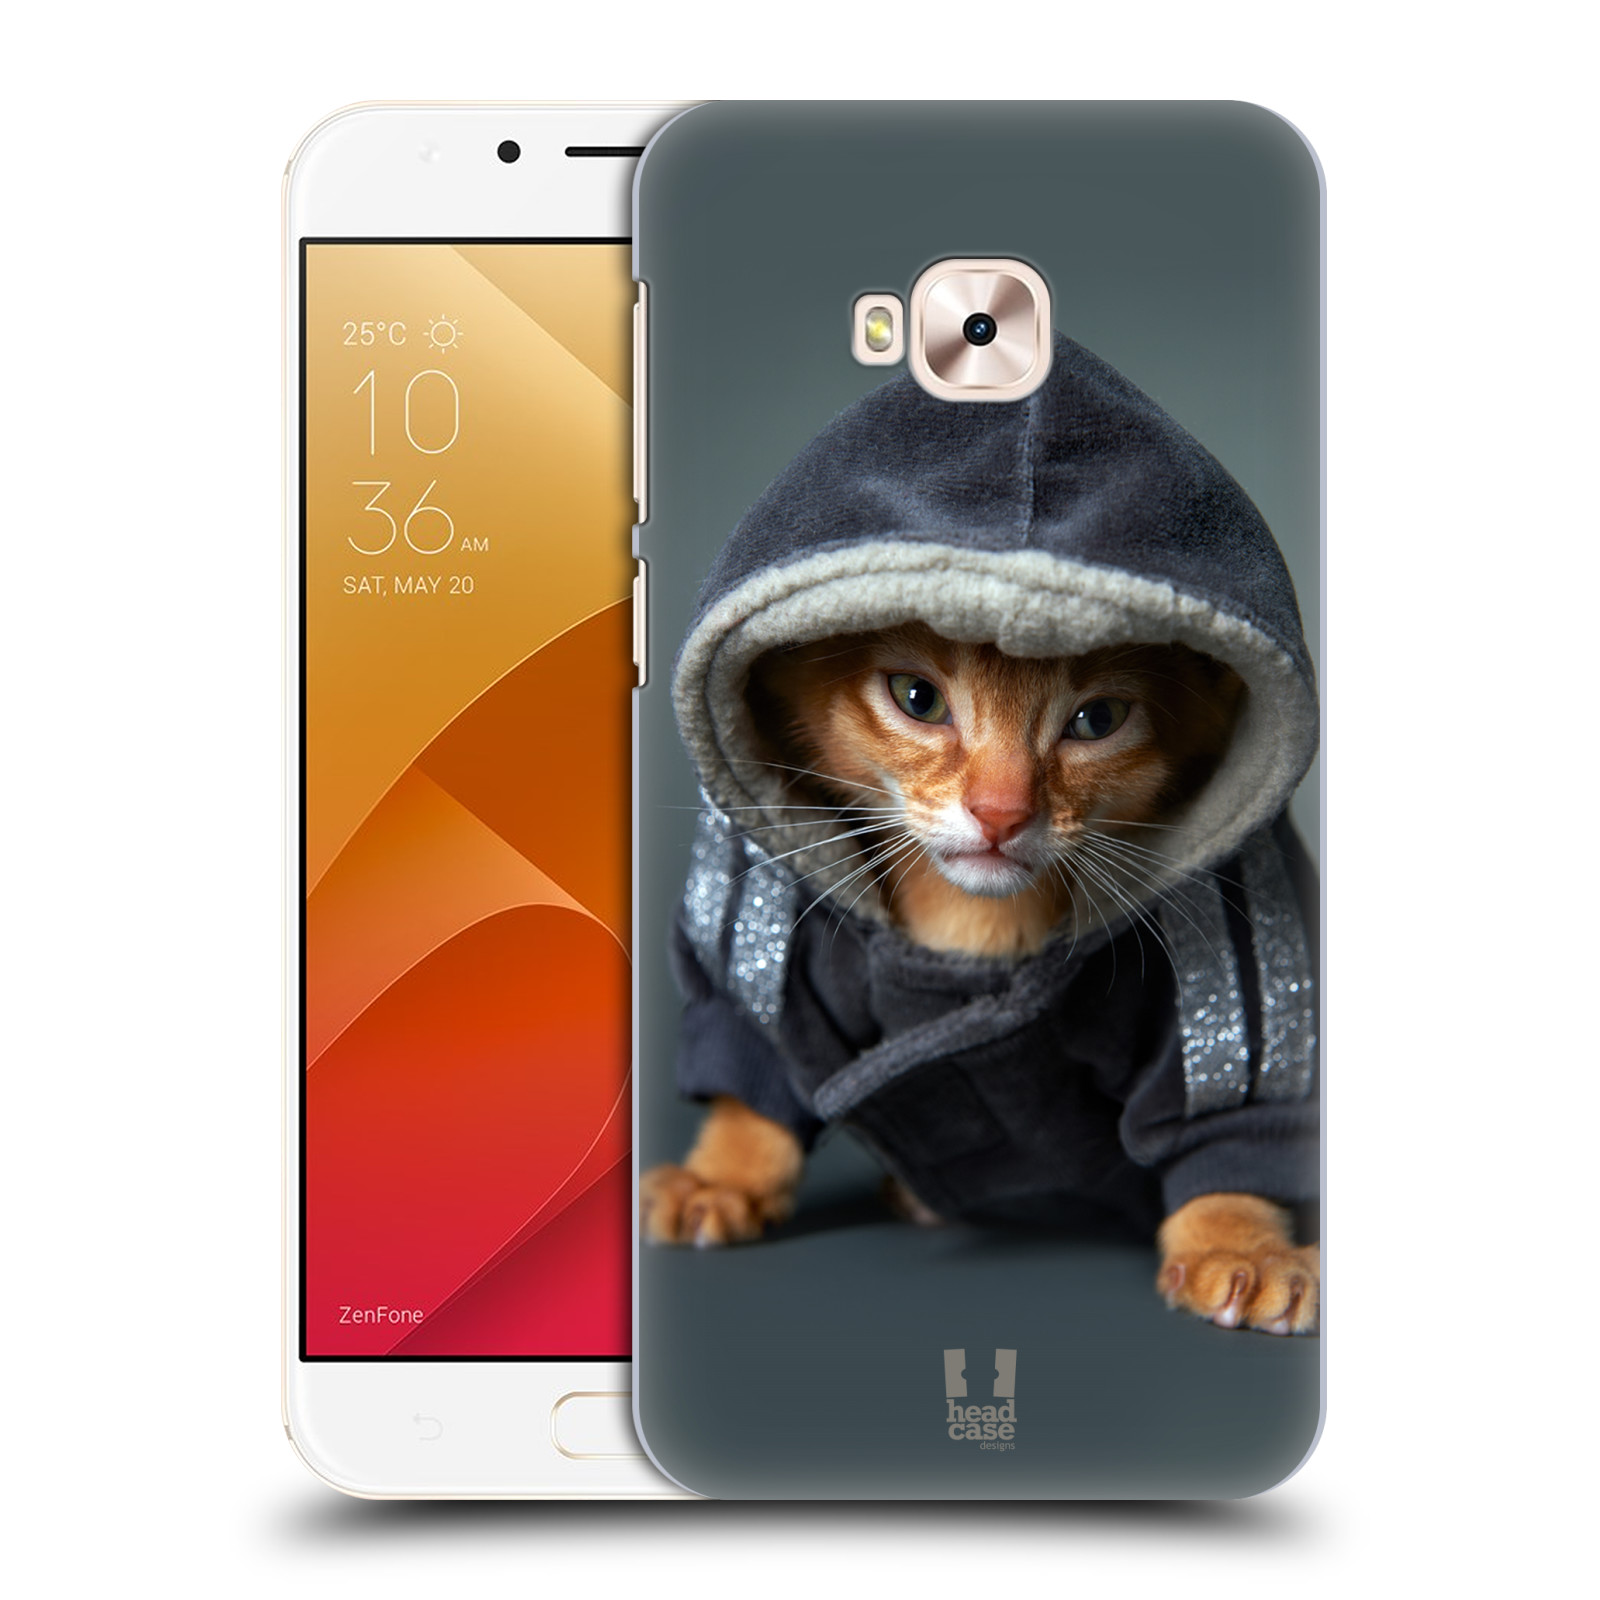 HEAD CASE plastový obal na mobil Asus Zenfone 4 Selfie Pro ZD552KL vzor Legrační zvířátka kotě/kočička s kapucí